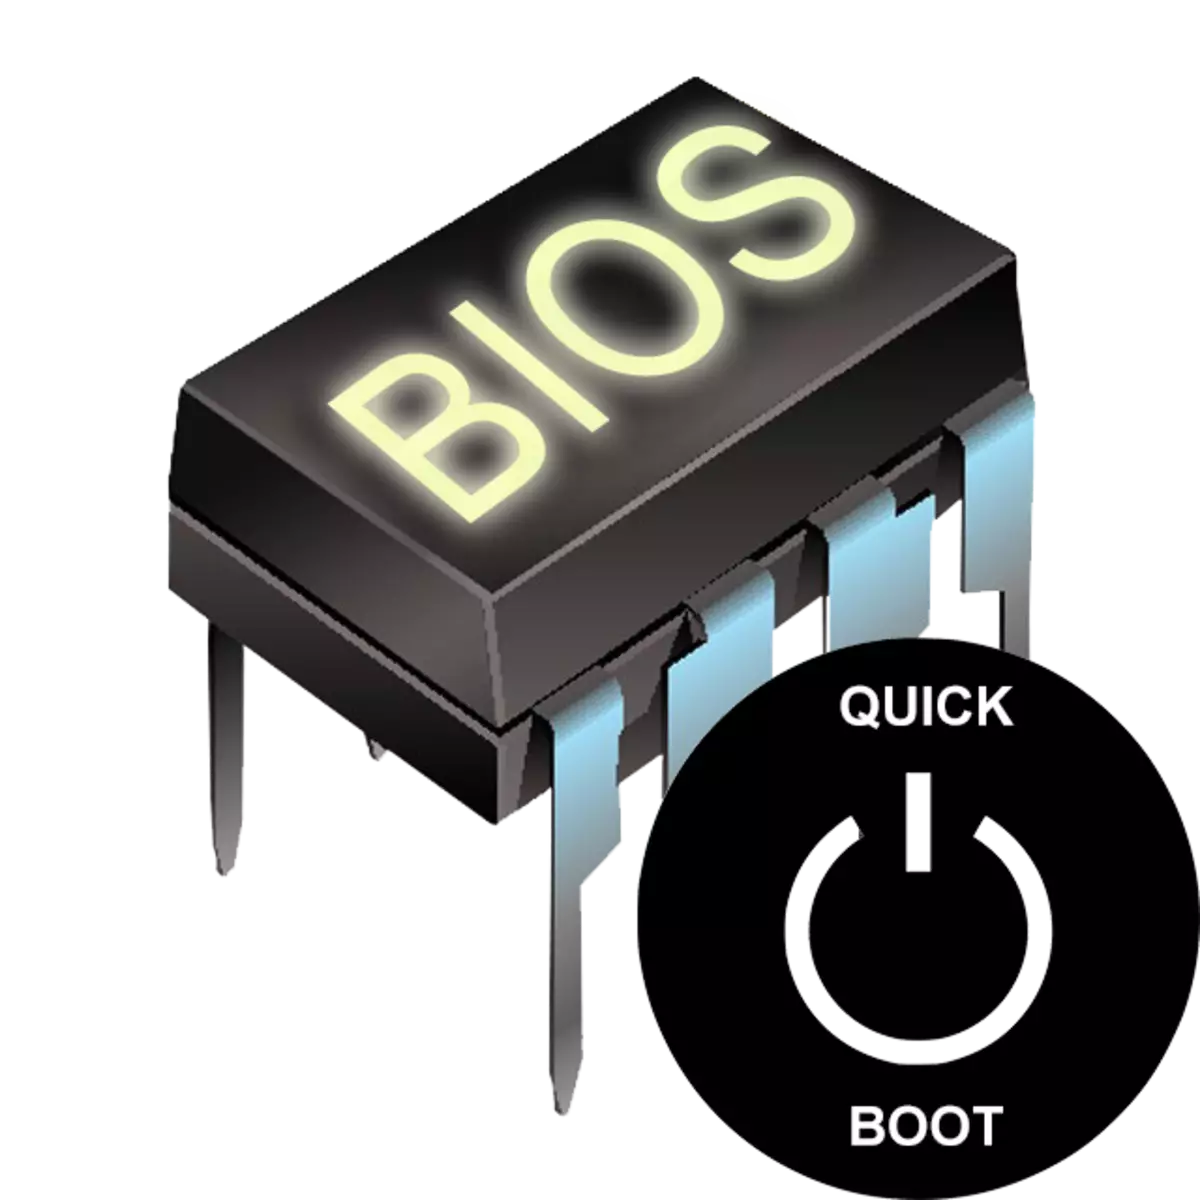 بوت سریع (دانلود سریع) در BIOS چیست؟